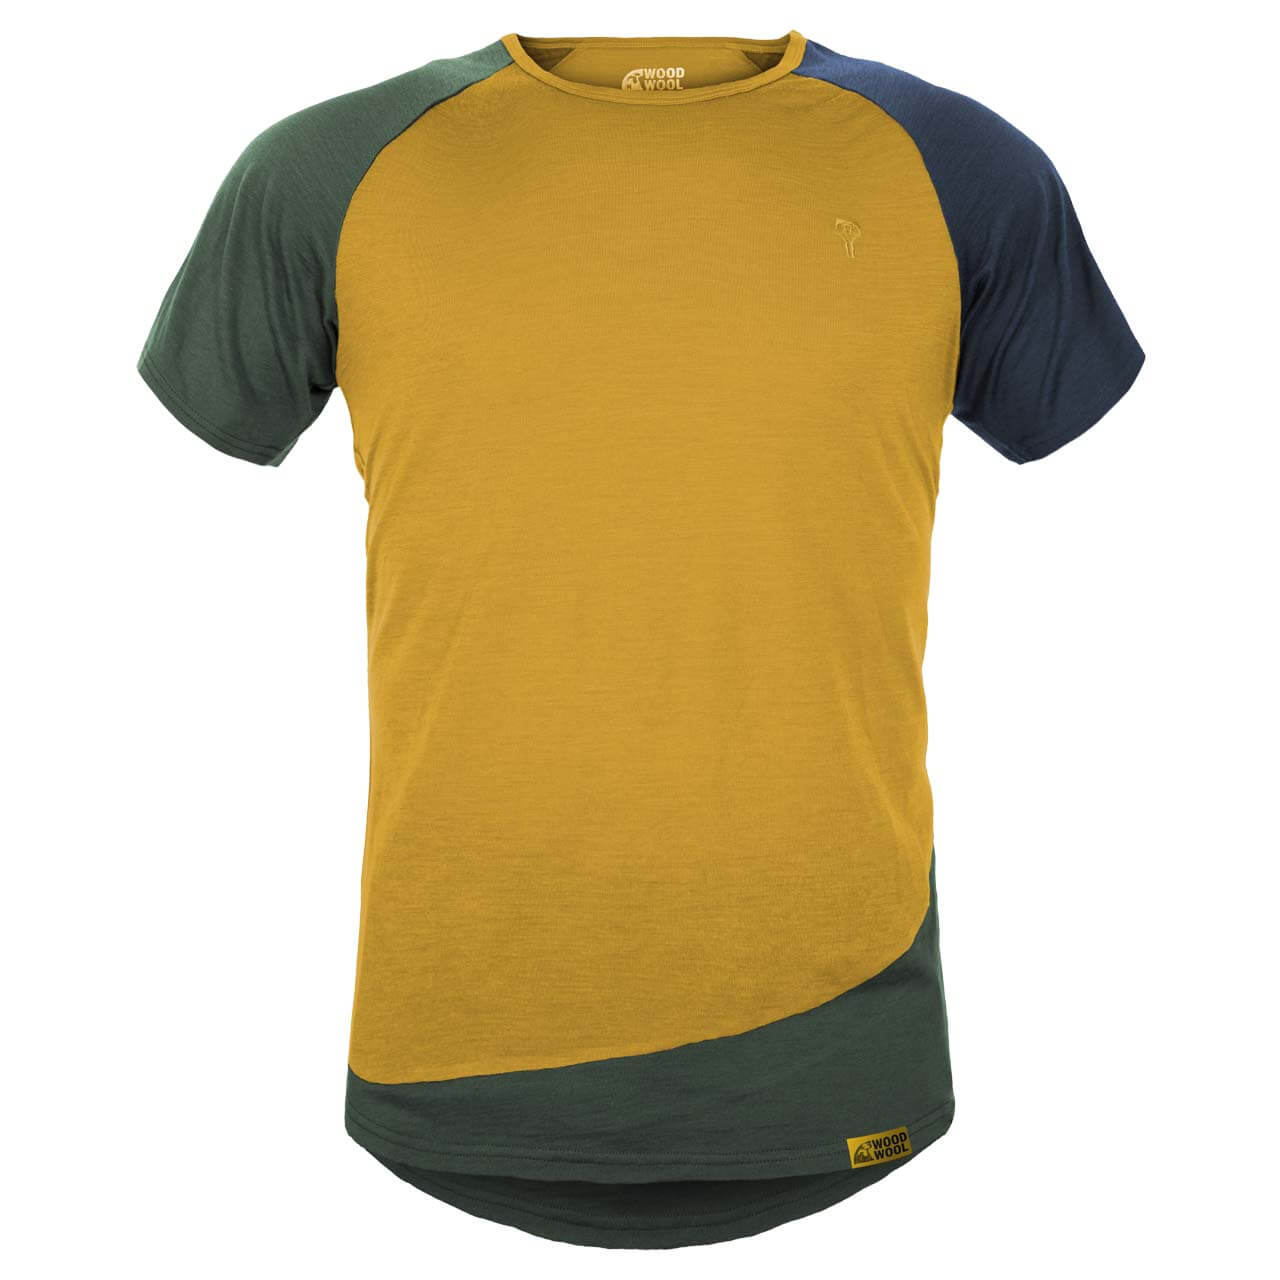 Grüezi Bag WoodWool T-Shirt Mr. Kirk - Daisy Daze Yellow, XL von Grüezi Bag